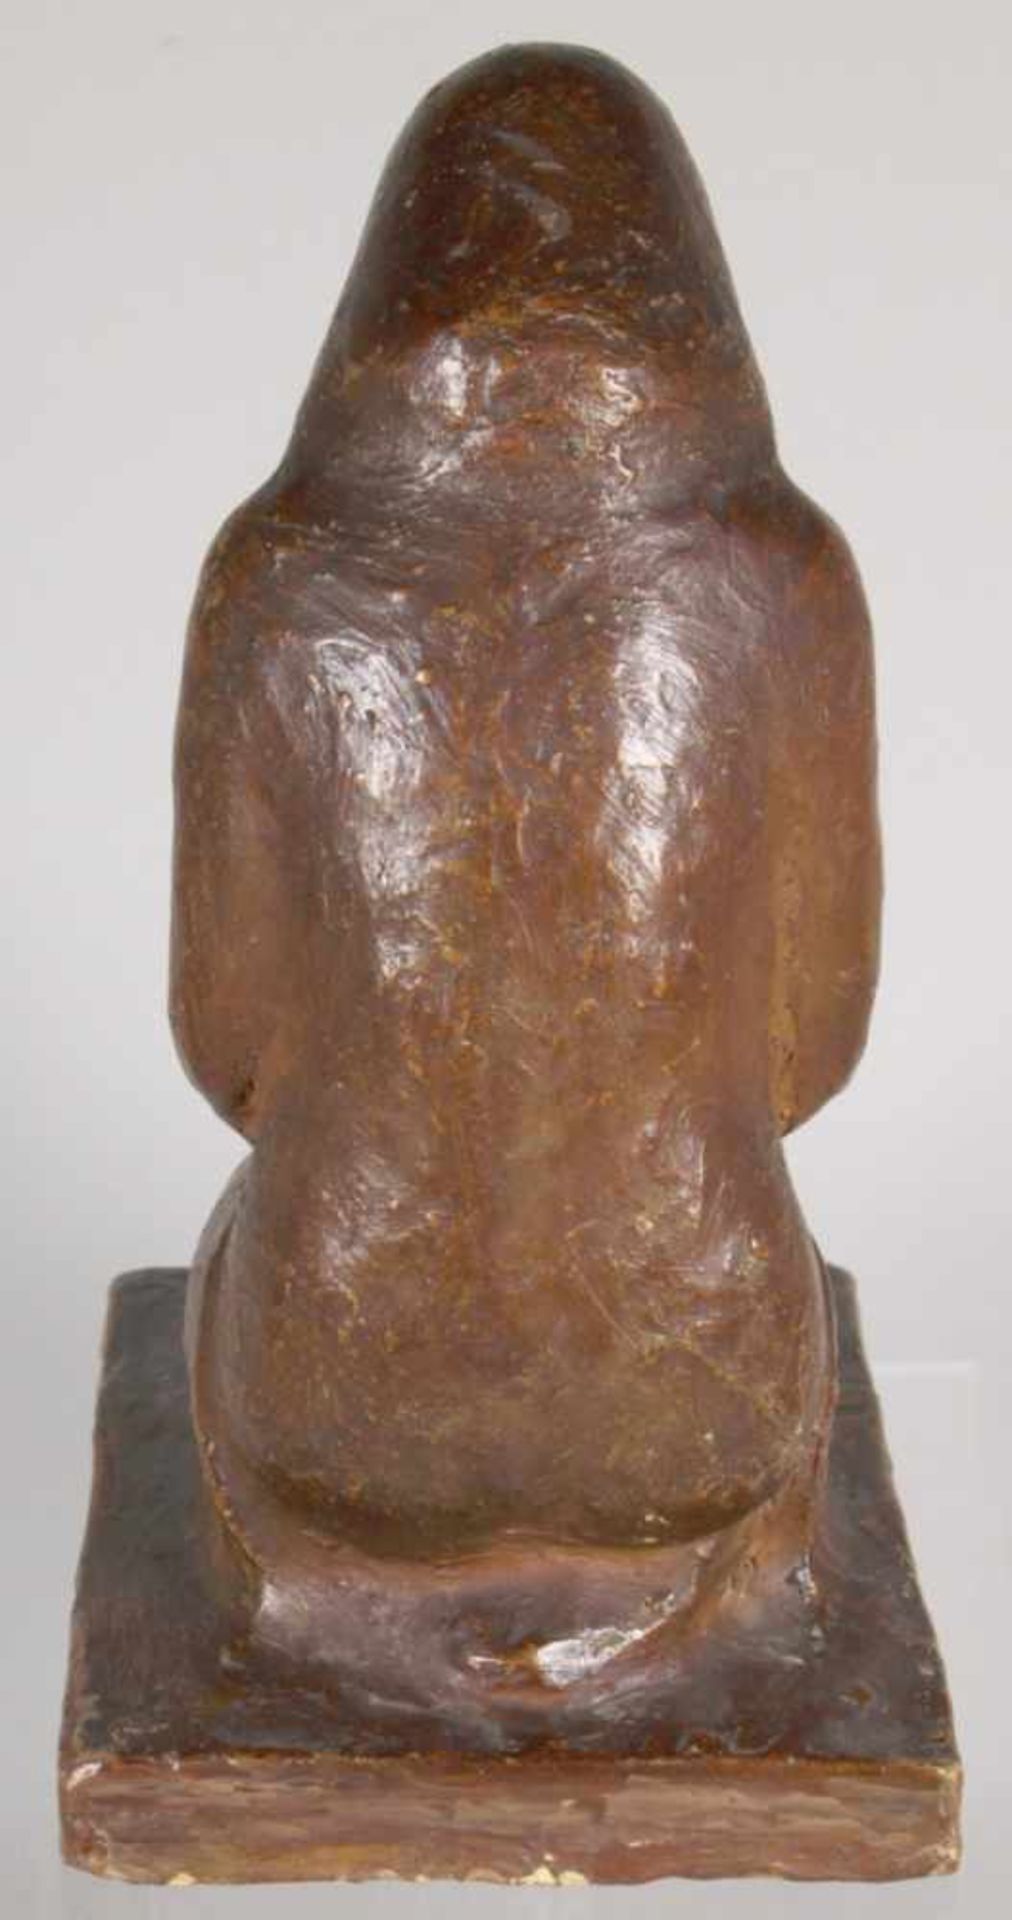 Terracotta-Figur, "Kniender, weiblicher Halbakt", anonymer Bildhauer Mitte 20. Jh., - Bild 2 aus 3